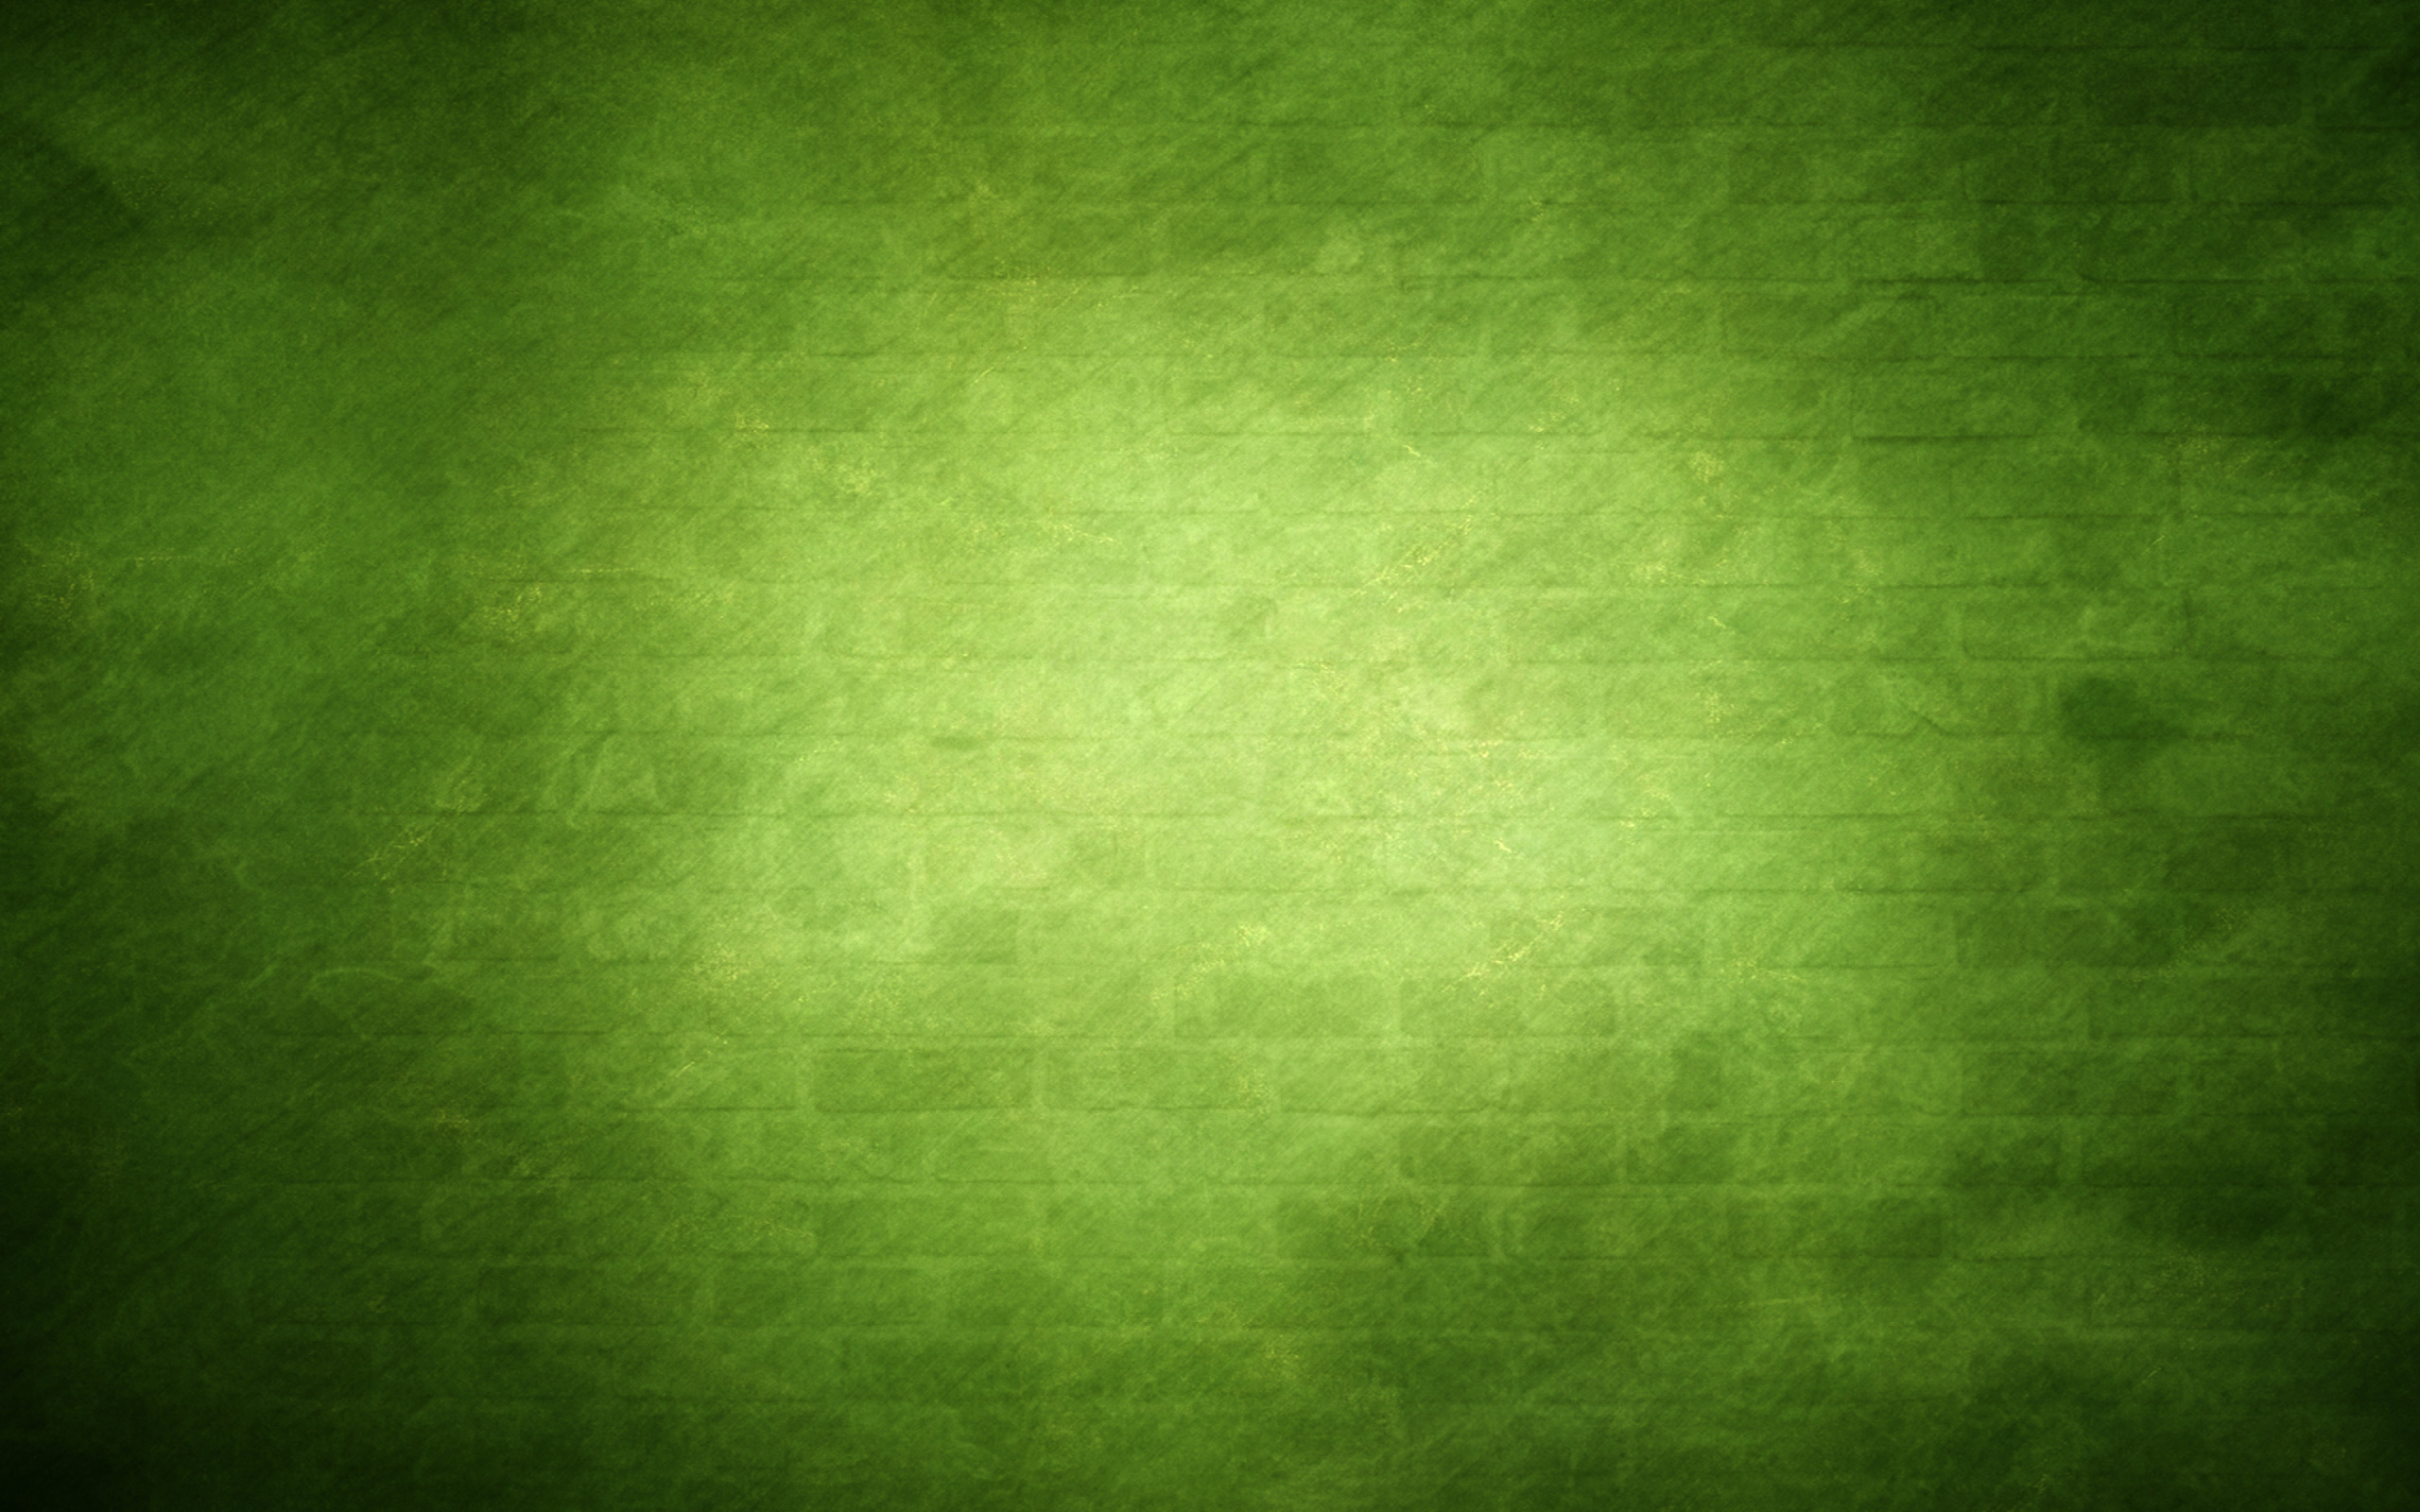 Das Green Texture Wallpaper 2560x1600